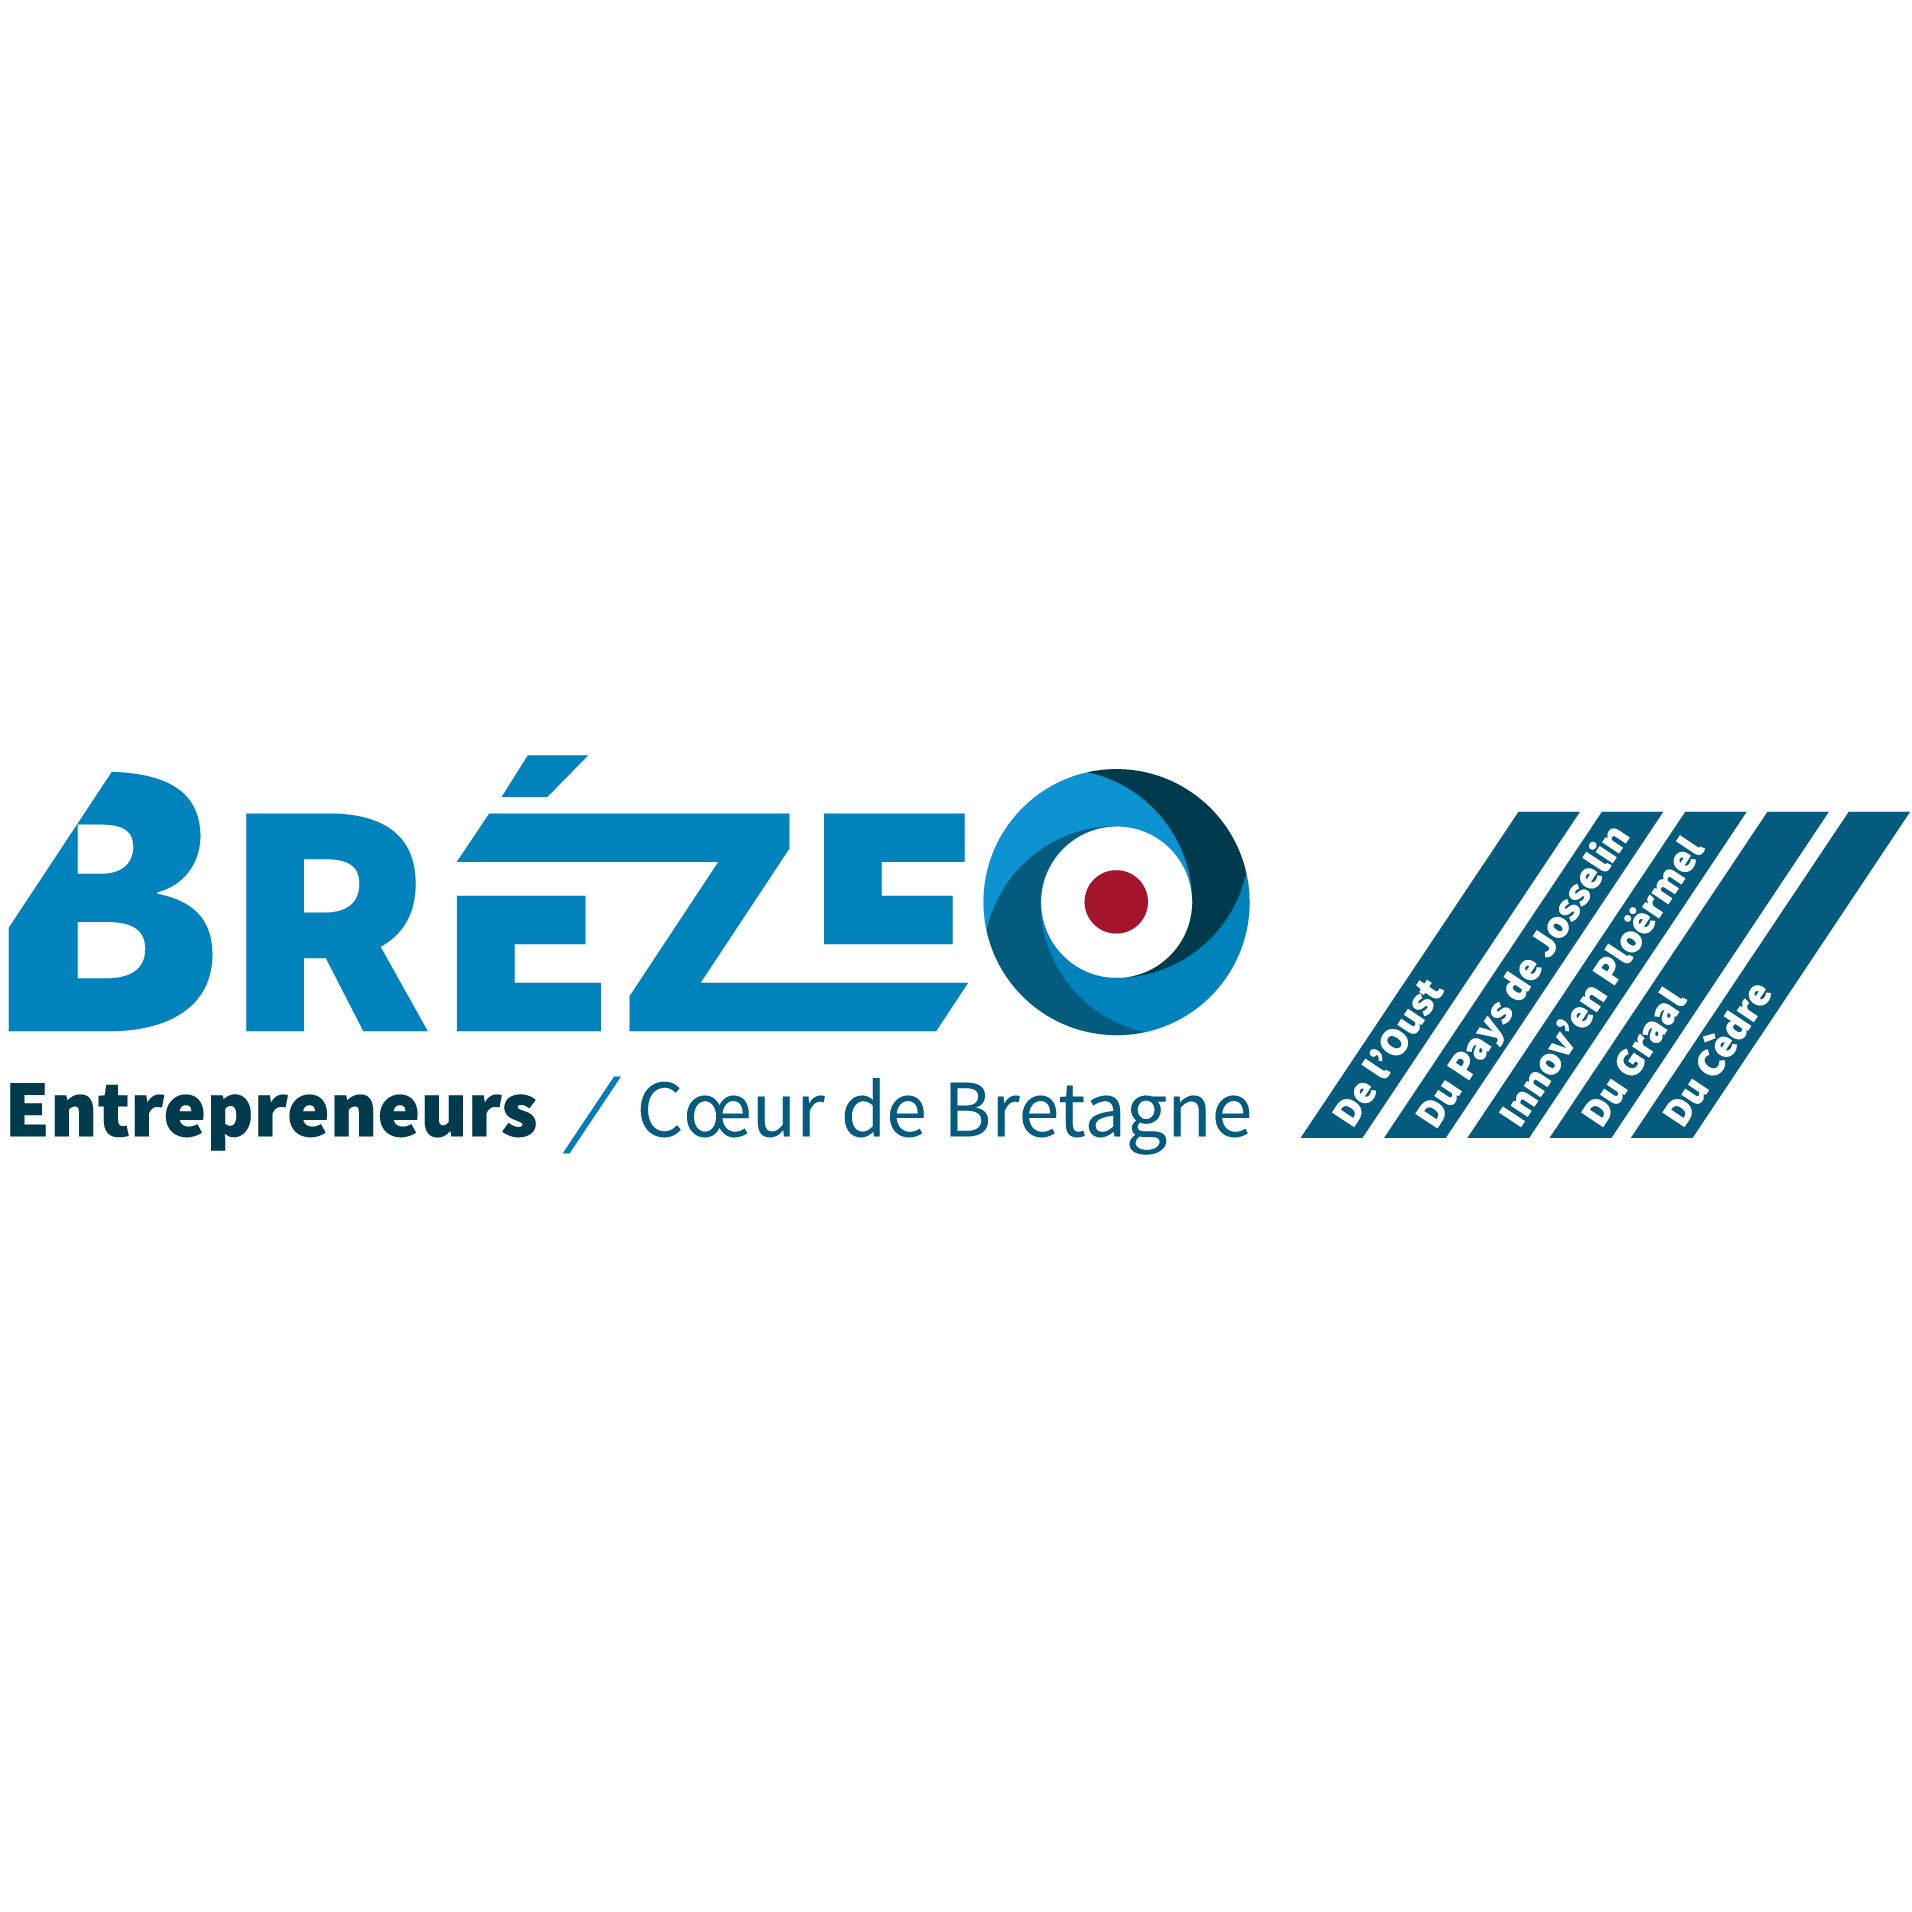 Brézeo